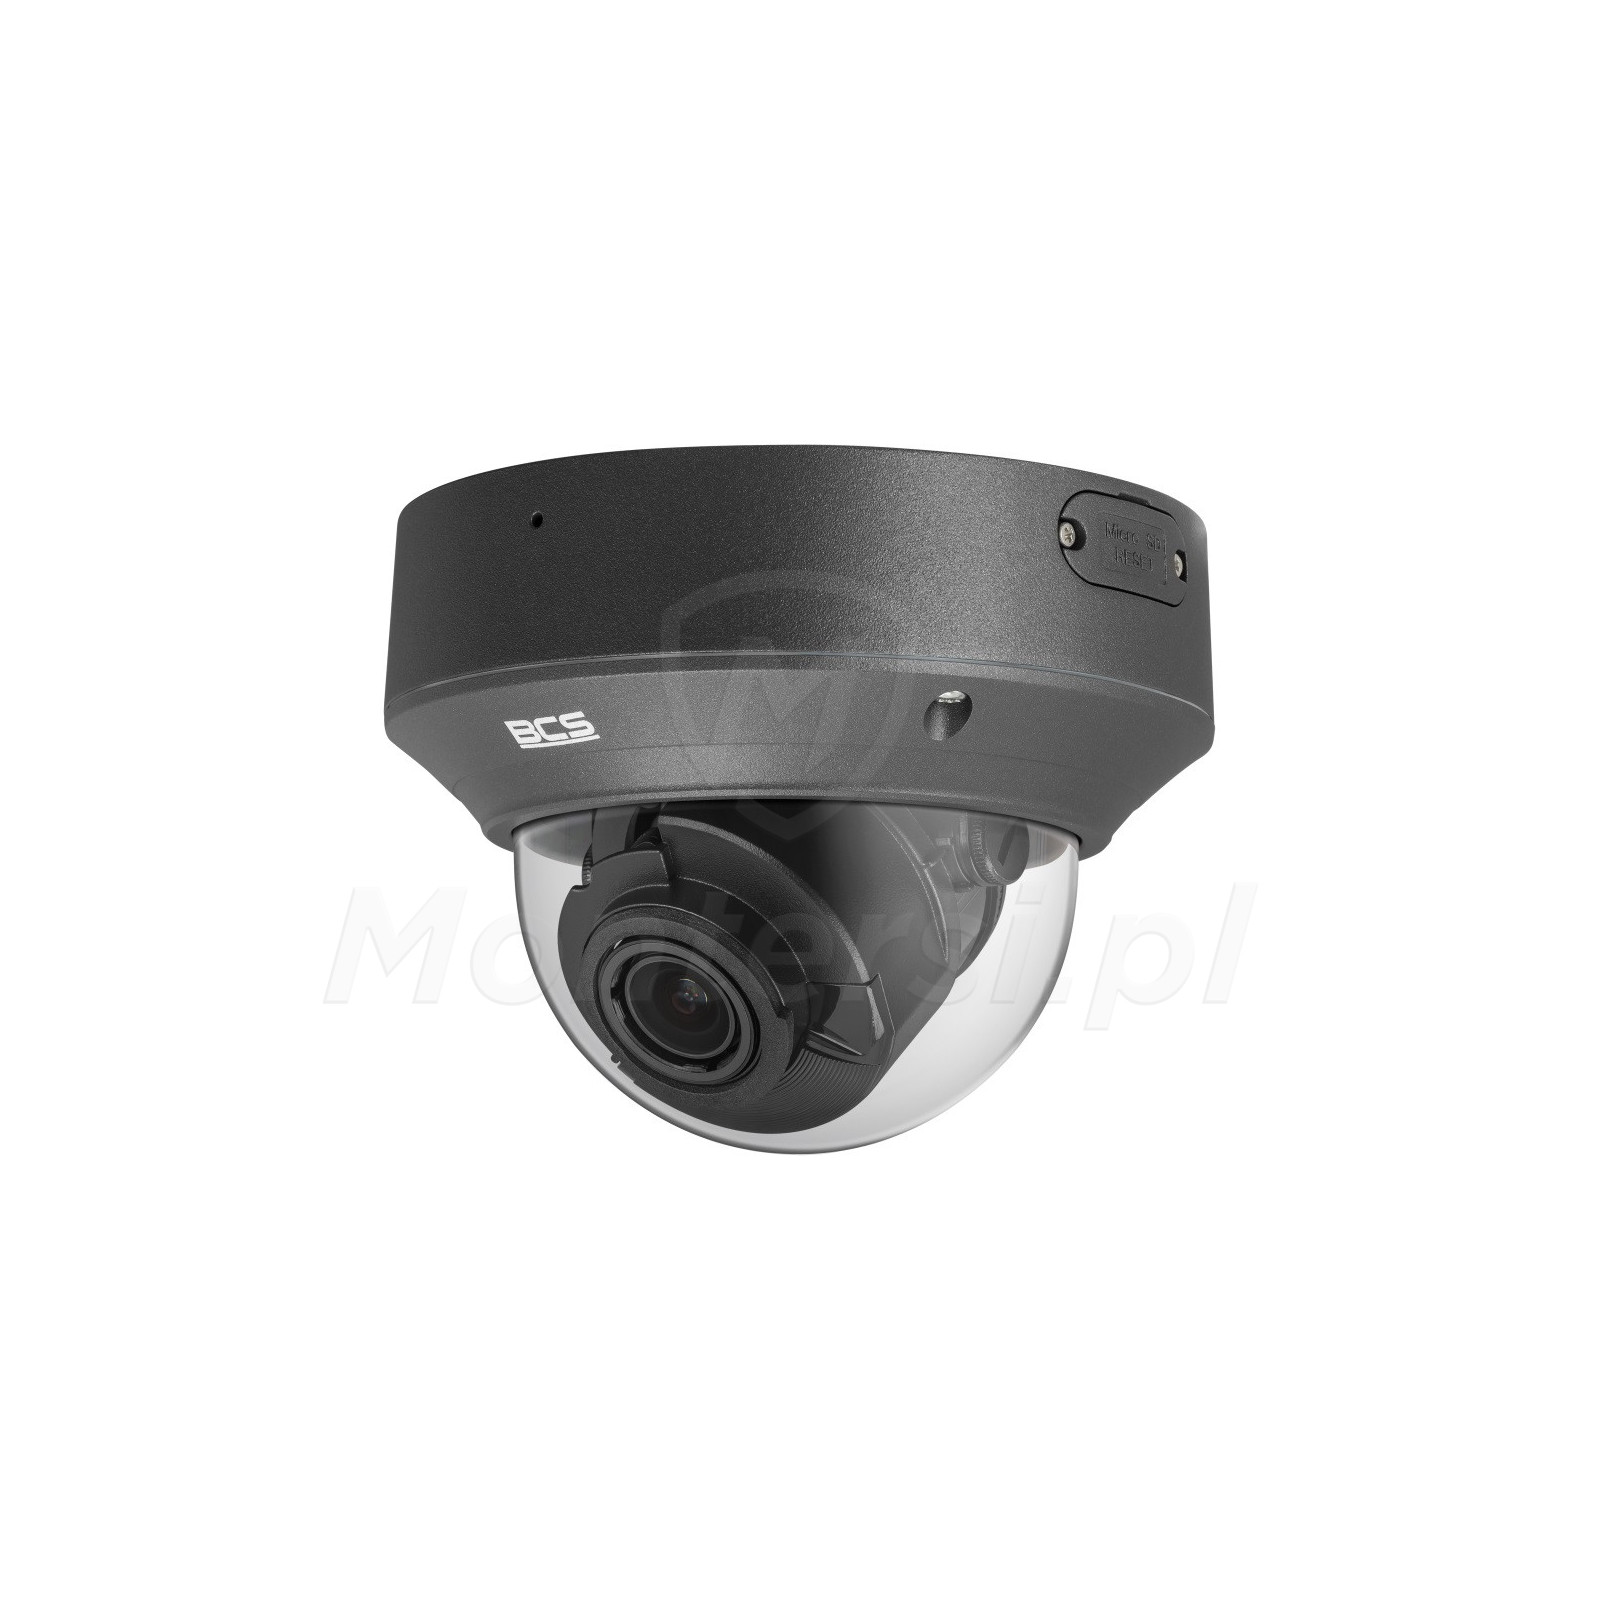 Wandaloodporna kamera IP BCS-P-DIP54VSR4-Ai2-G